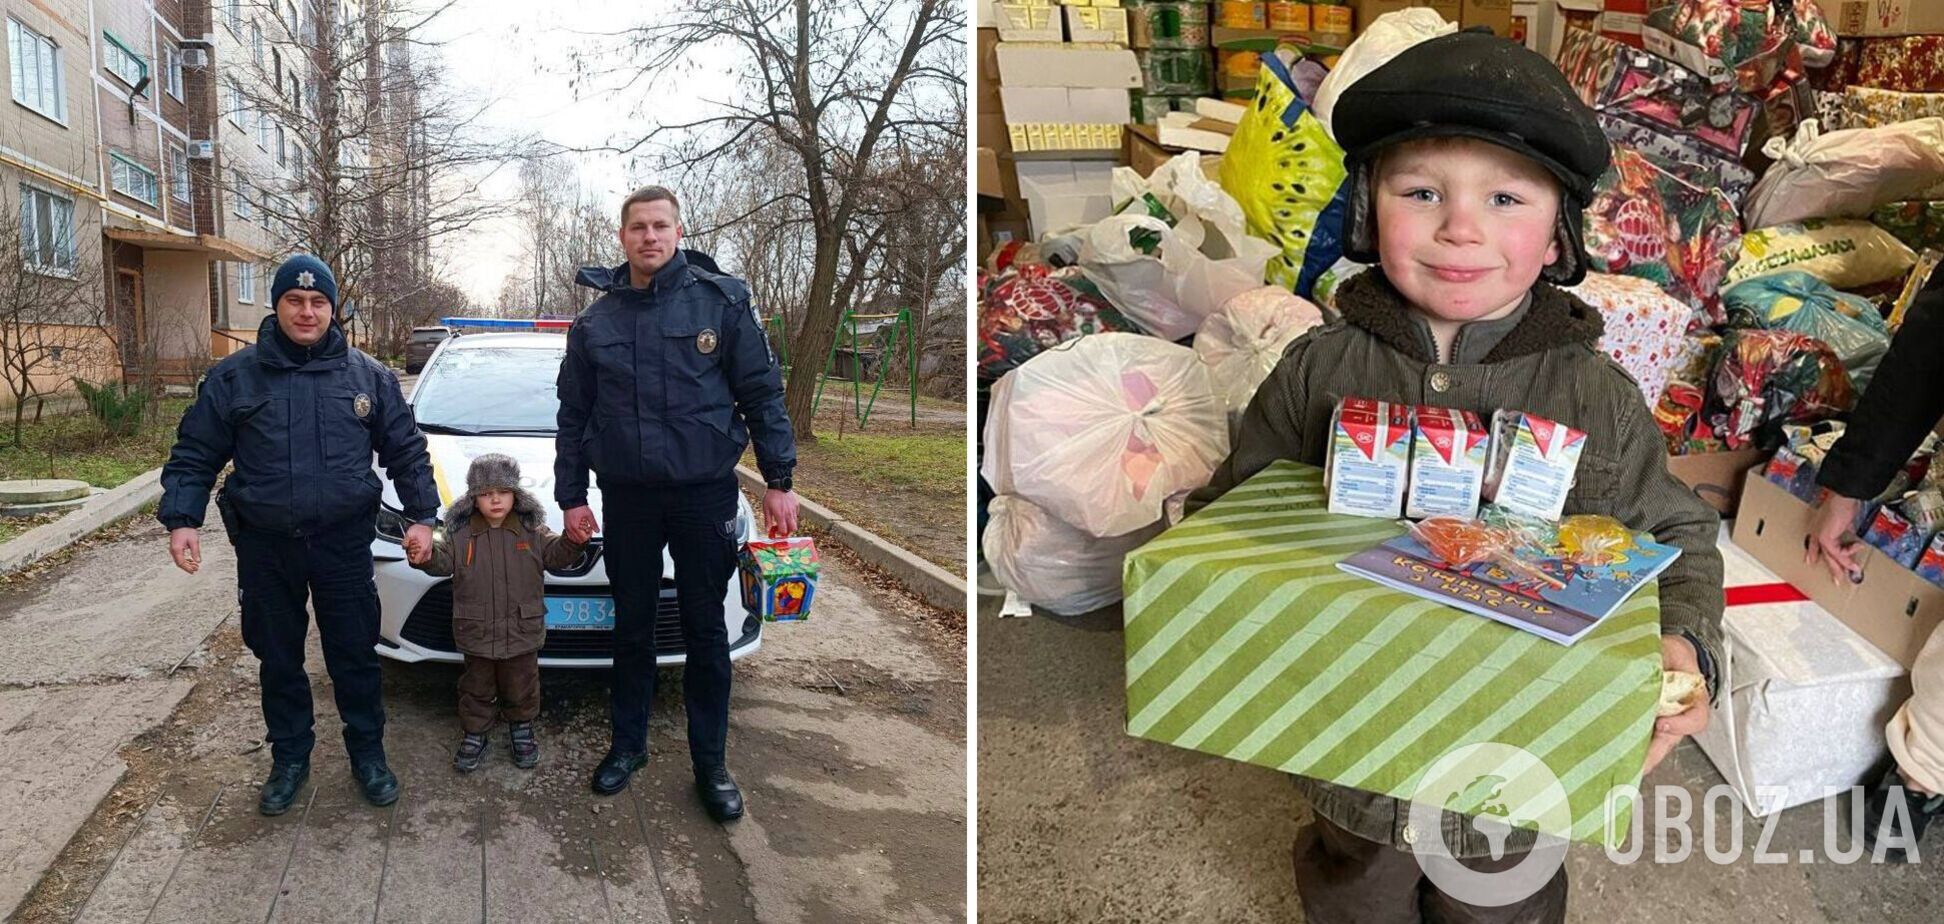 Патрульні зробили сюрприз хлопчику із Слов’янська, знімок якого облетів мережу: його тато захищає Україну. Фото 